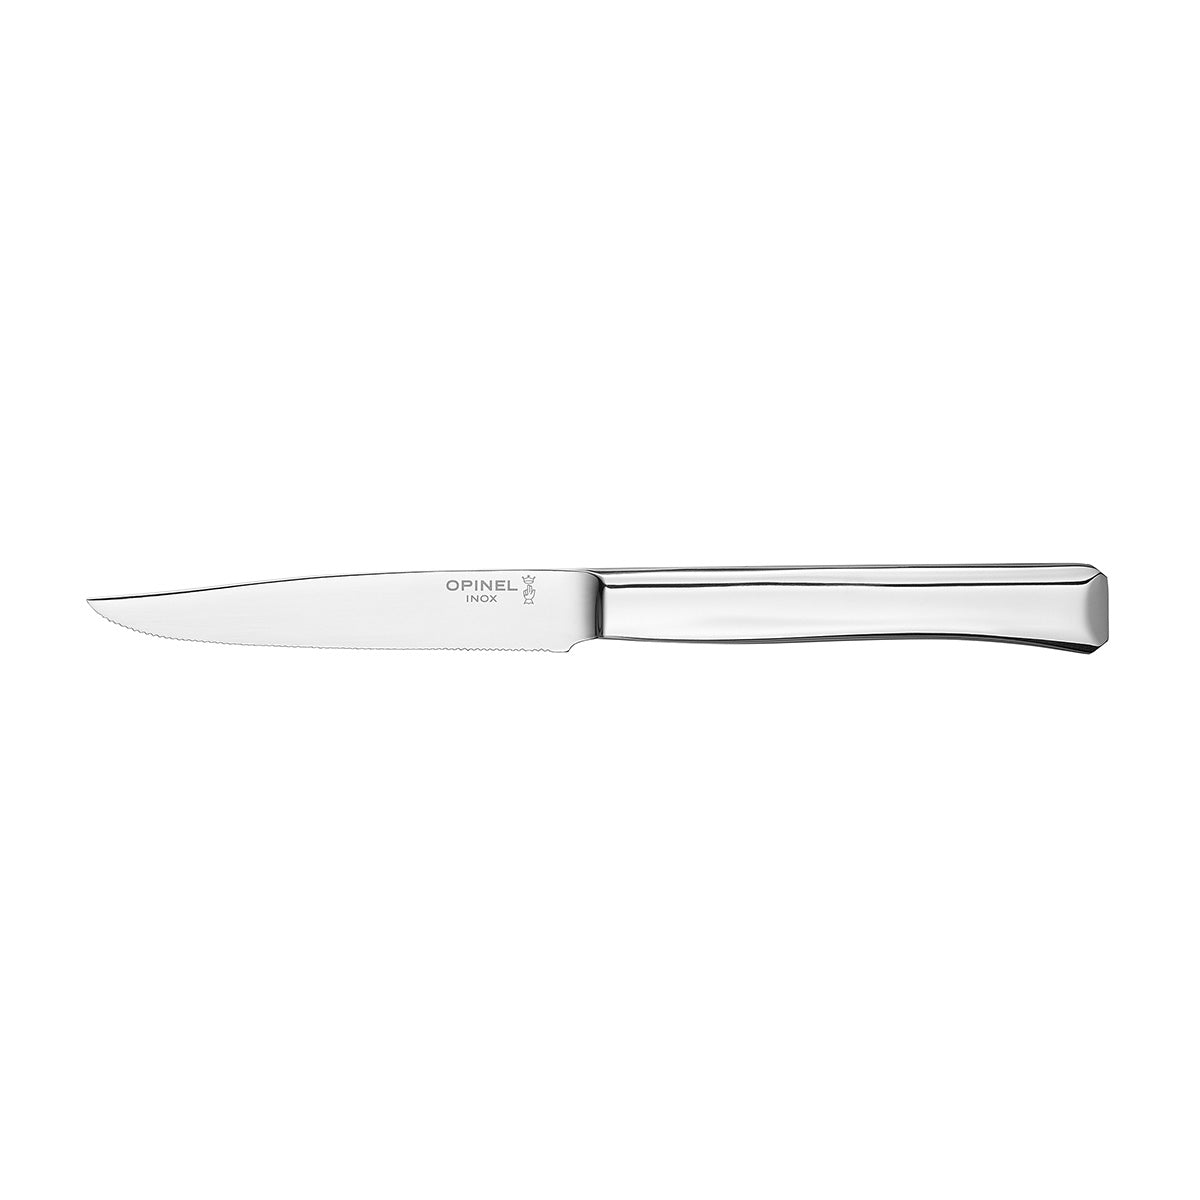 Perpétue "Entremets" Set of 12-Piece Demi-tasse Knives